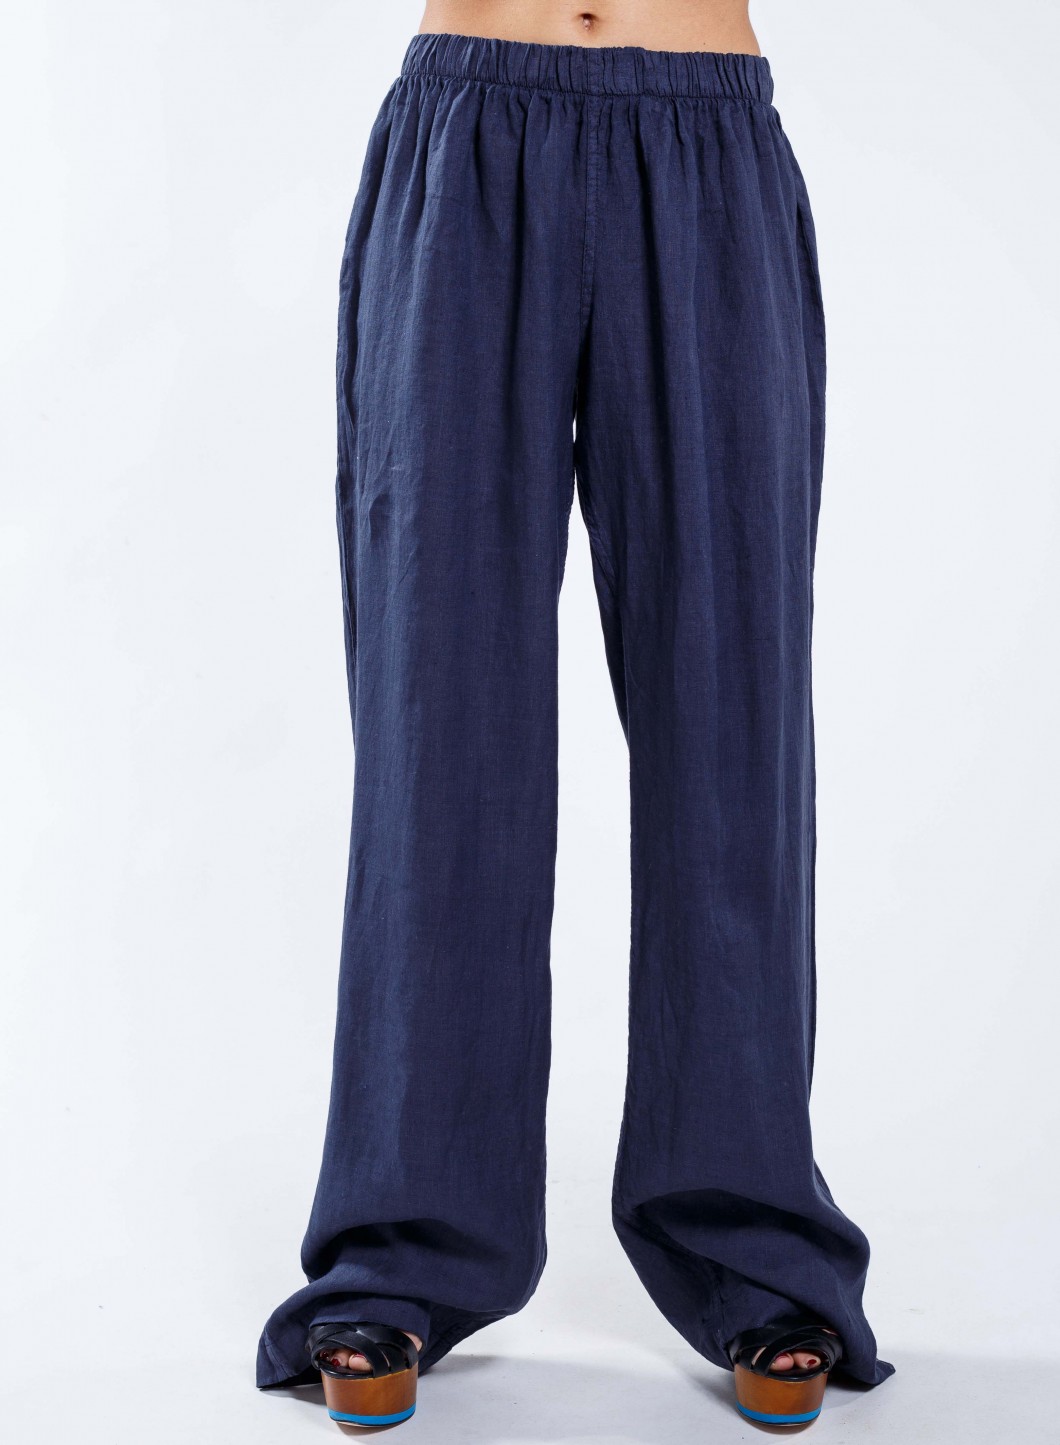 Pants Simple women's 100% linen - JOIN CLOTHES1060 x 1445